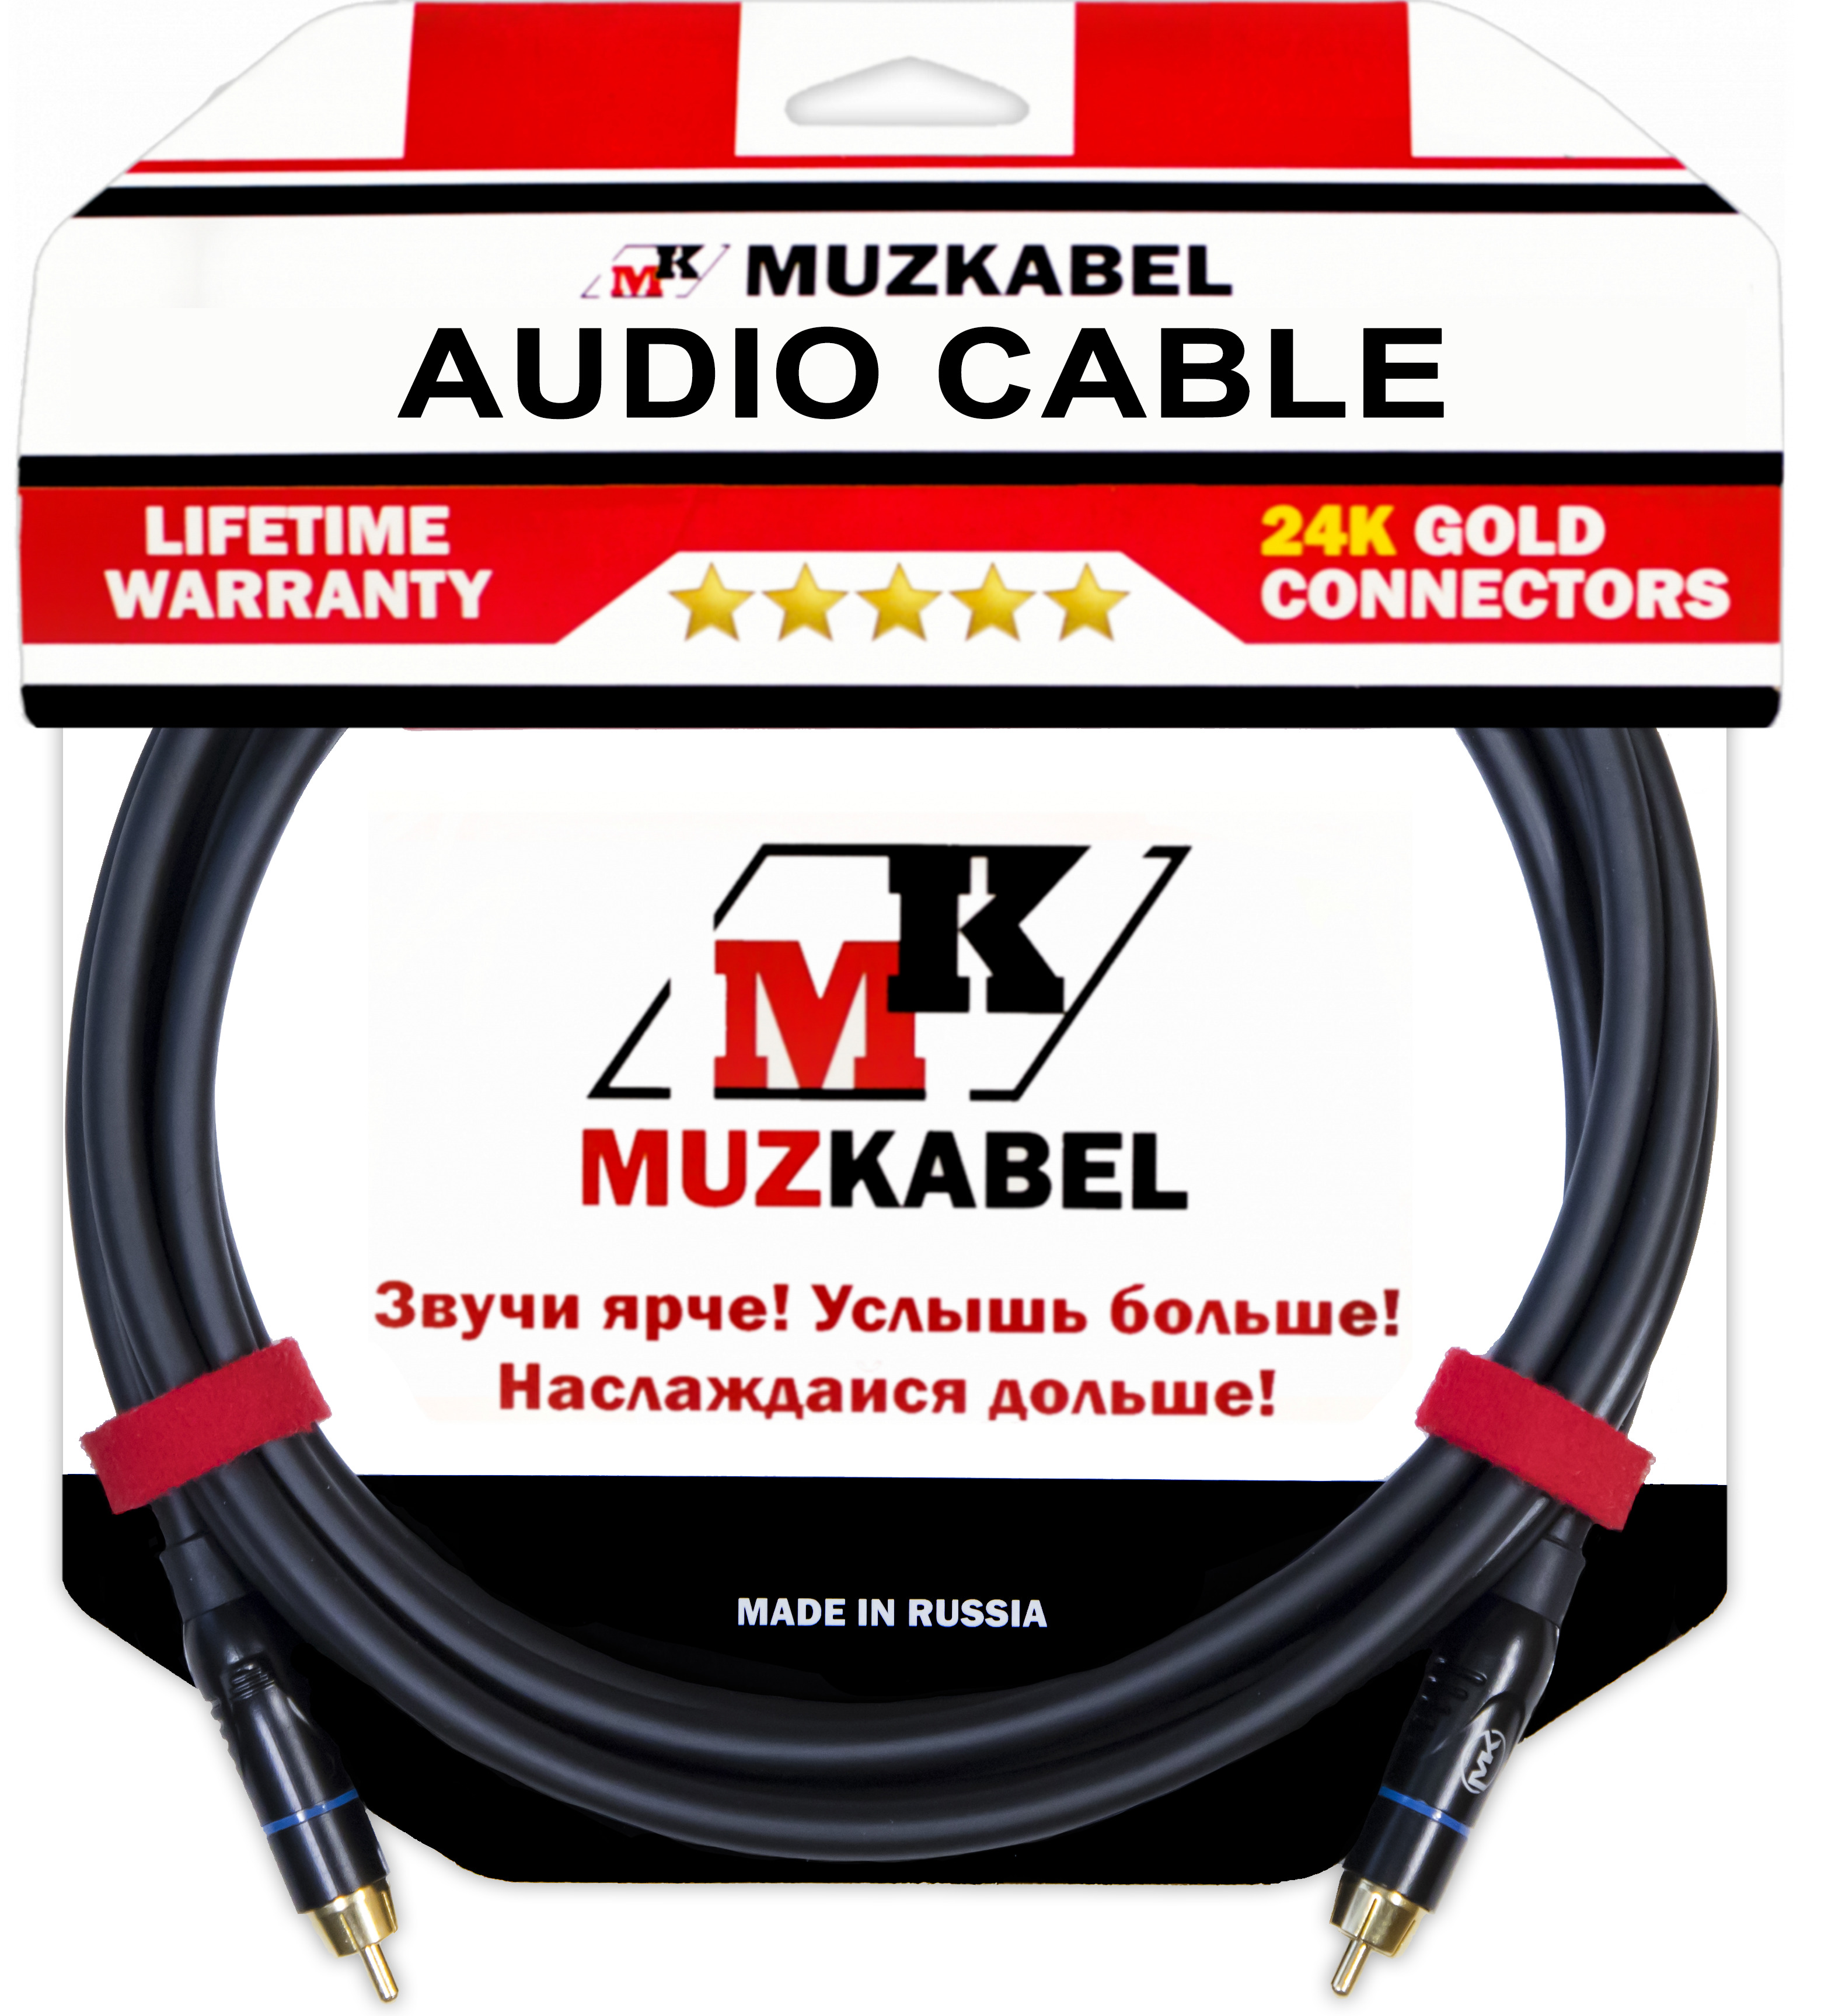 Аудио кабель MUZKABEL RCBIK3 - 6 метров, RCA - RCA